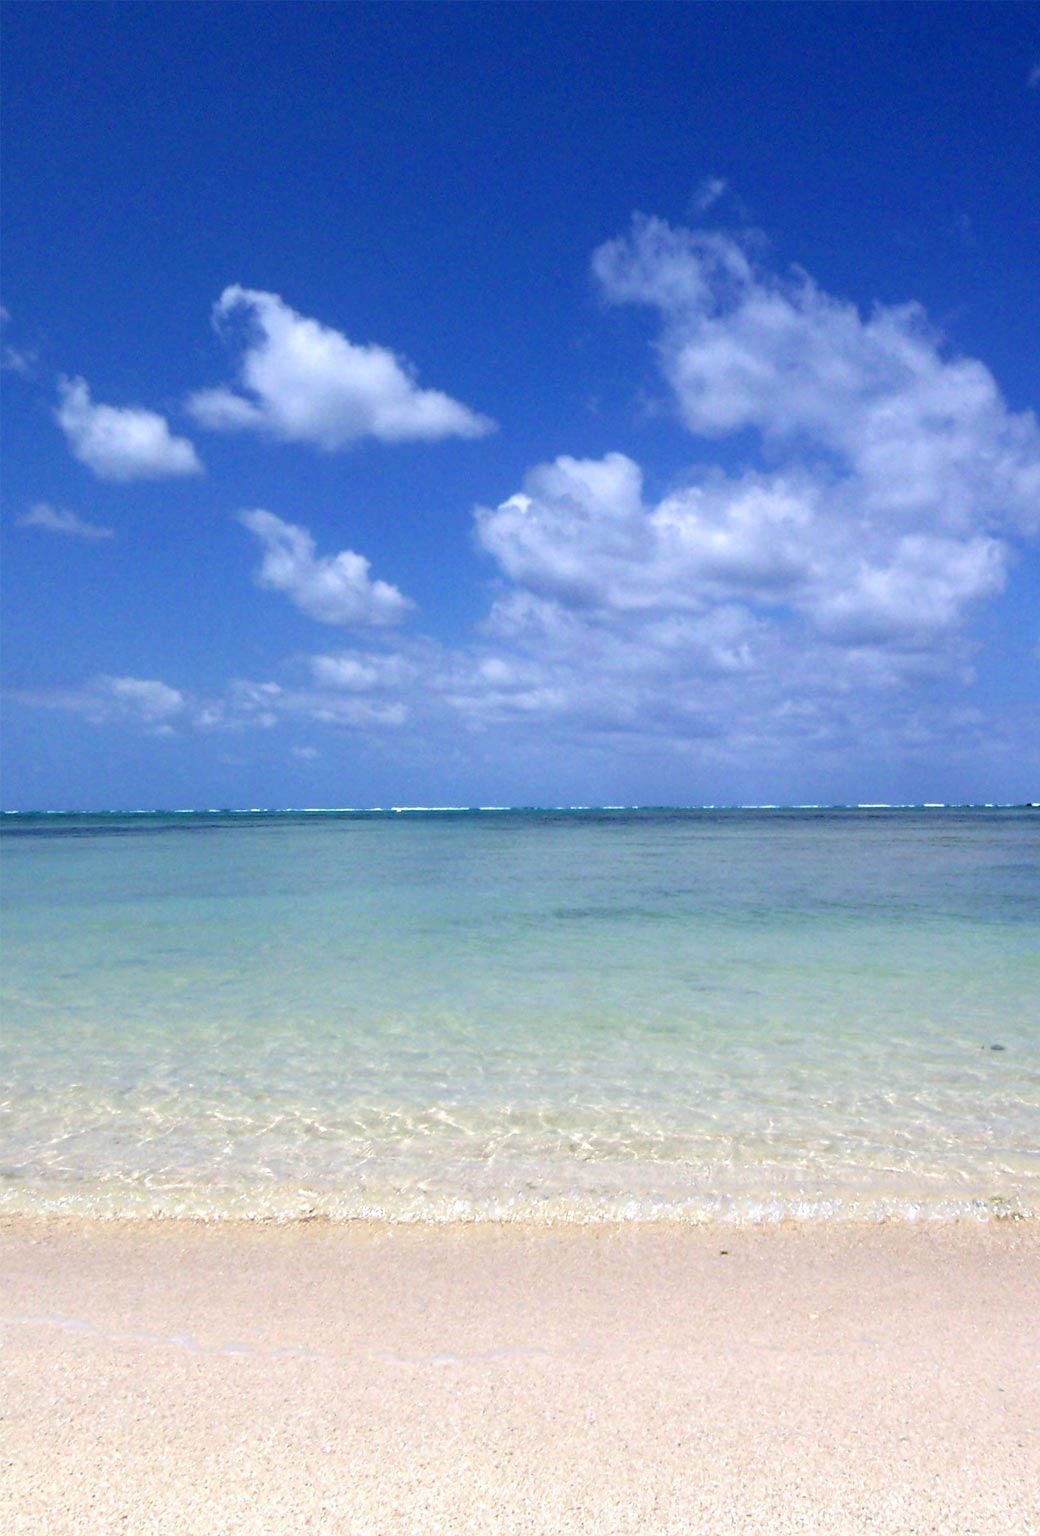 Fondo de pantalla semanal: Playa paradisíaca | iPhoneros